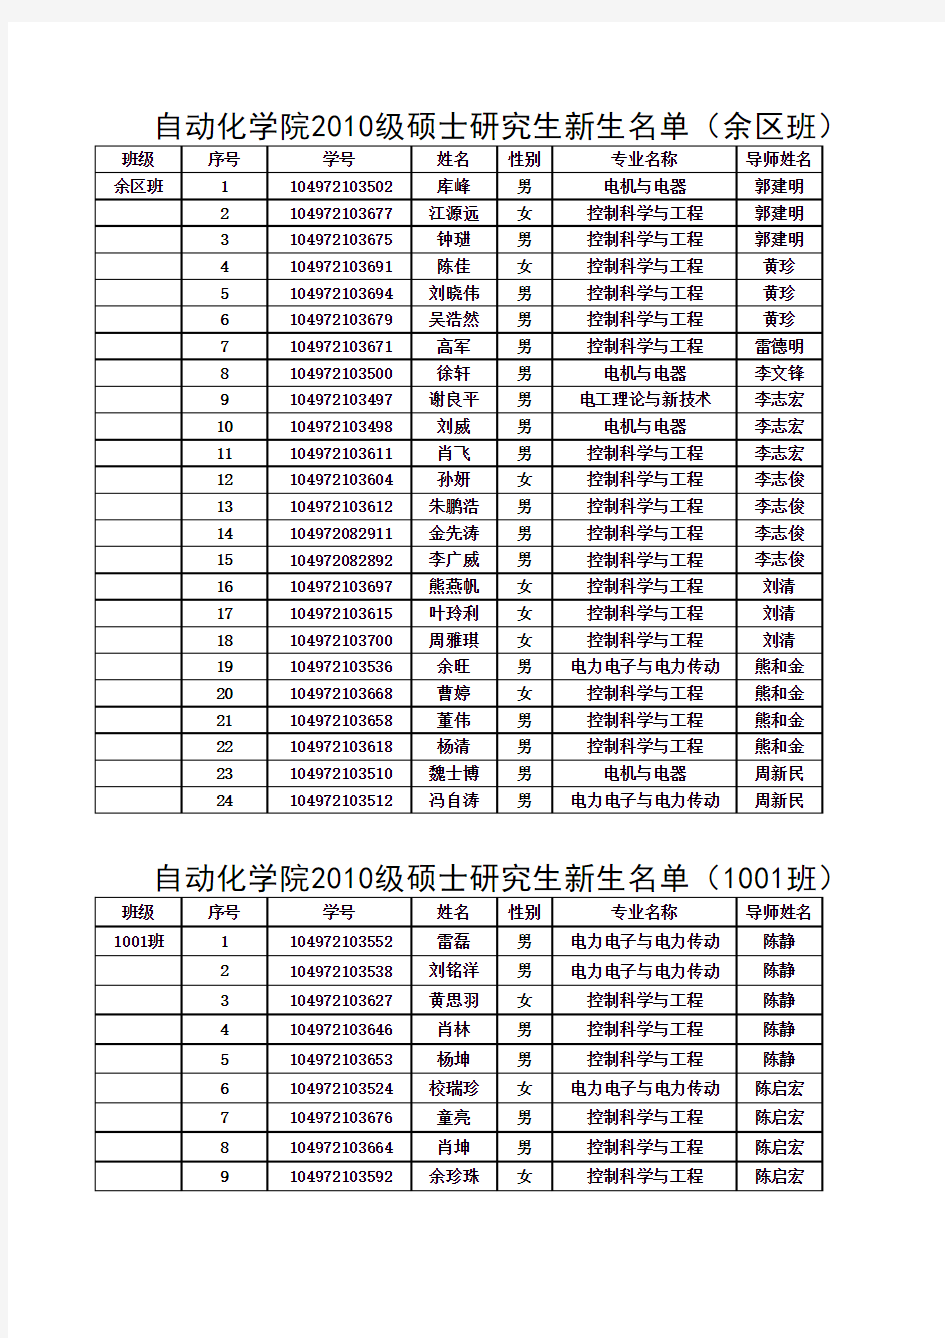 武汉理工大学自动化学院2010级研究生分班及导师安排(176科硕 37工硕)